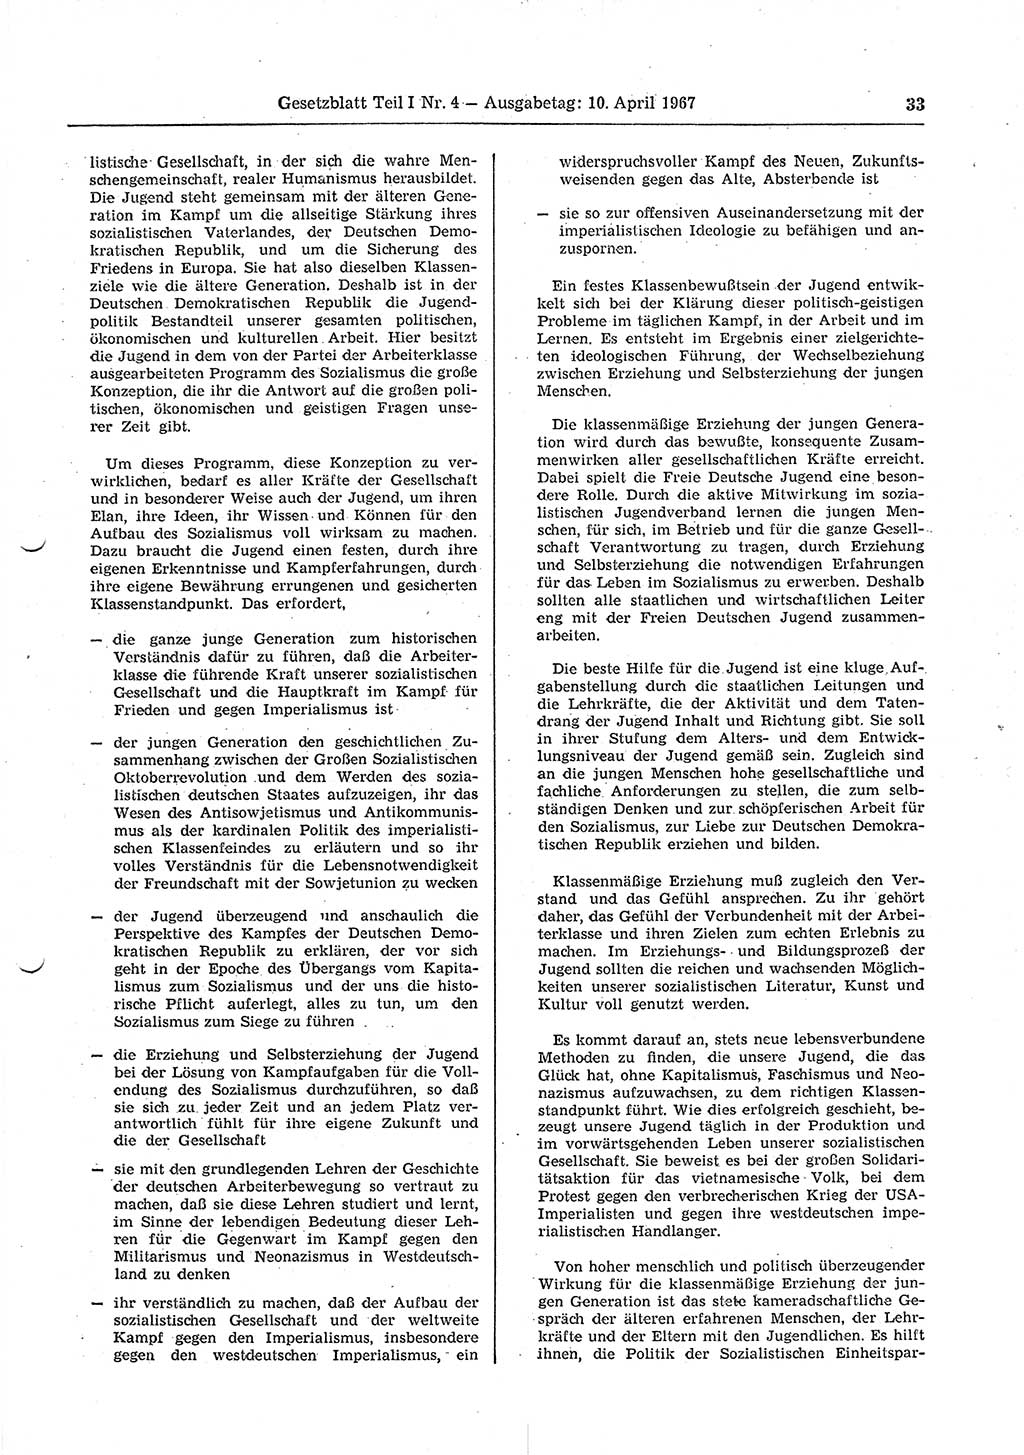 Gesetzblatt (GBl.) der Deutschen Demokratischen Republik (DDR) Teil Ⅰ 1967, Seite 33 (GBl. DDR Ⅰ 1967, S. 33)